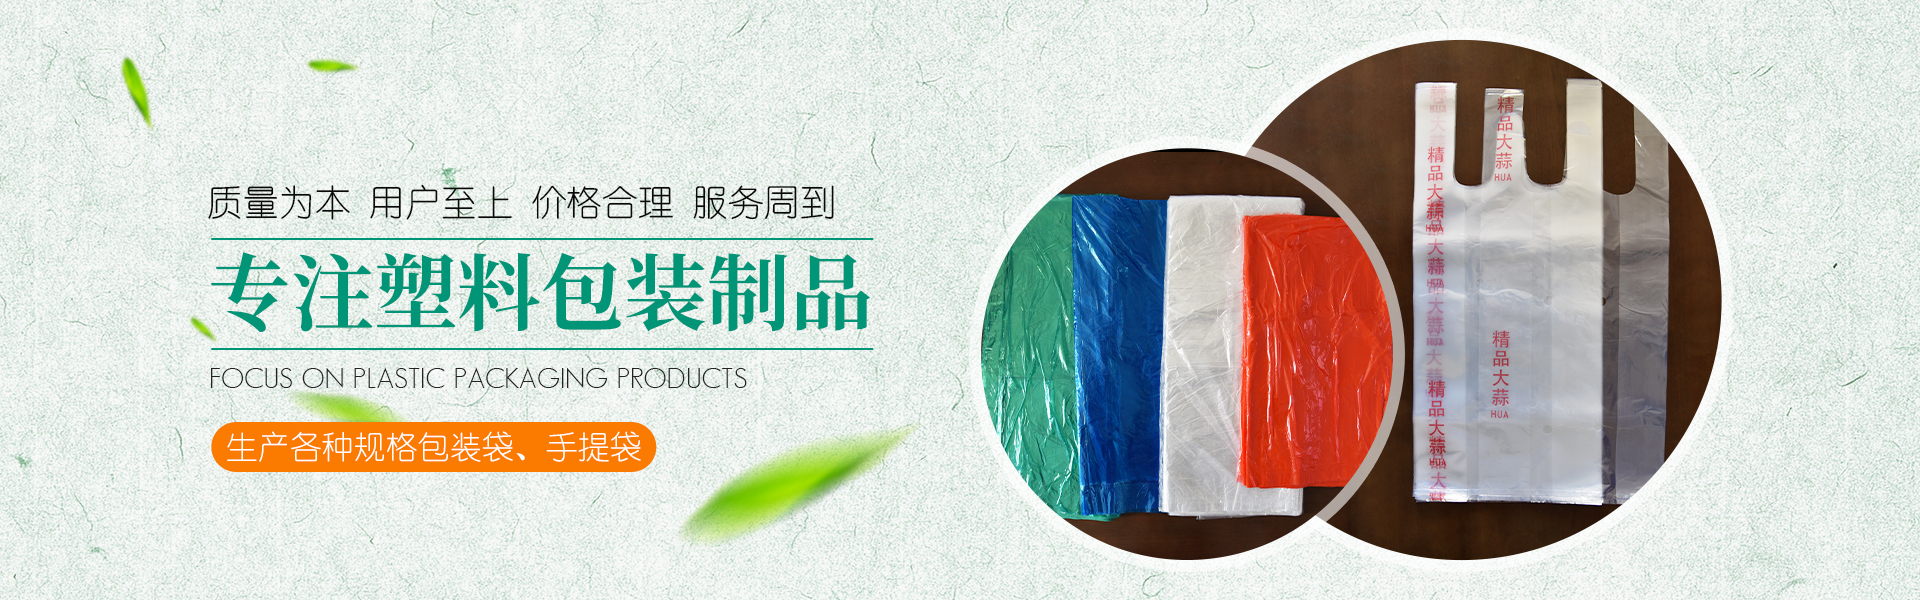 青州市金海源塑料包裝制品有限公司